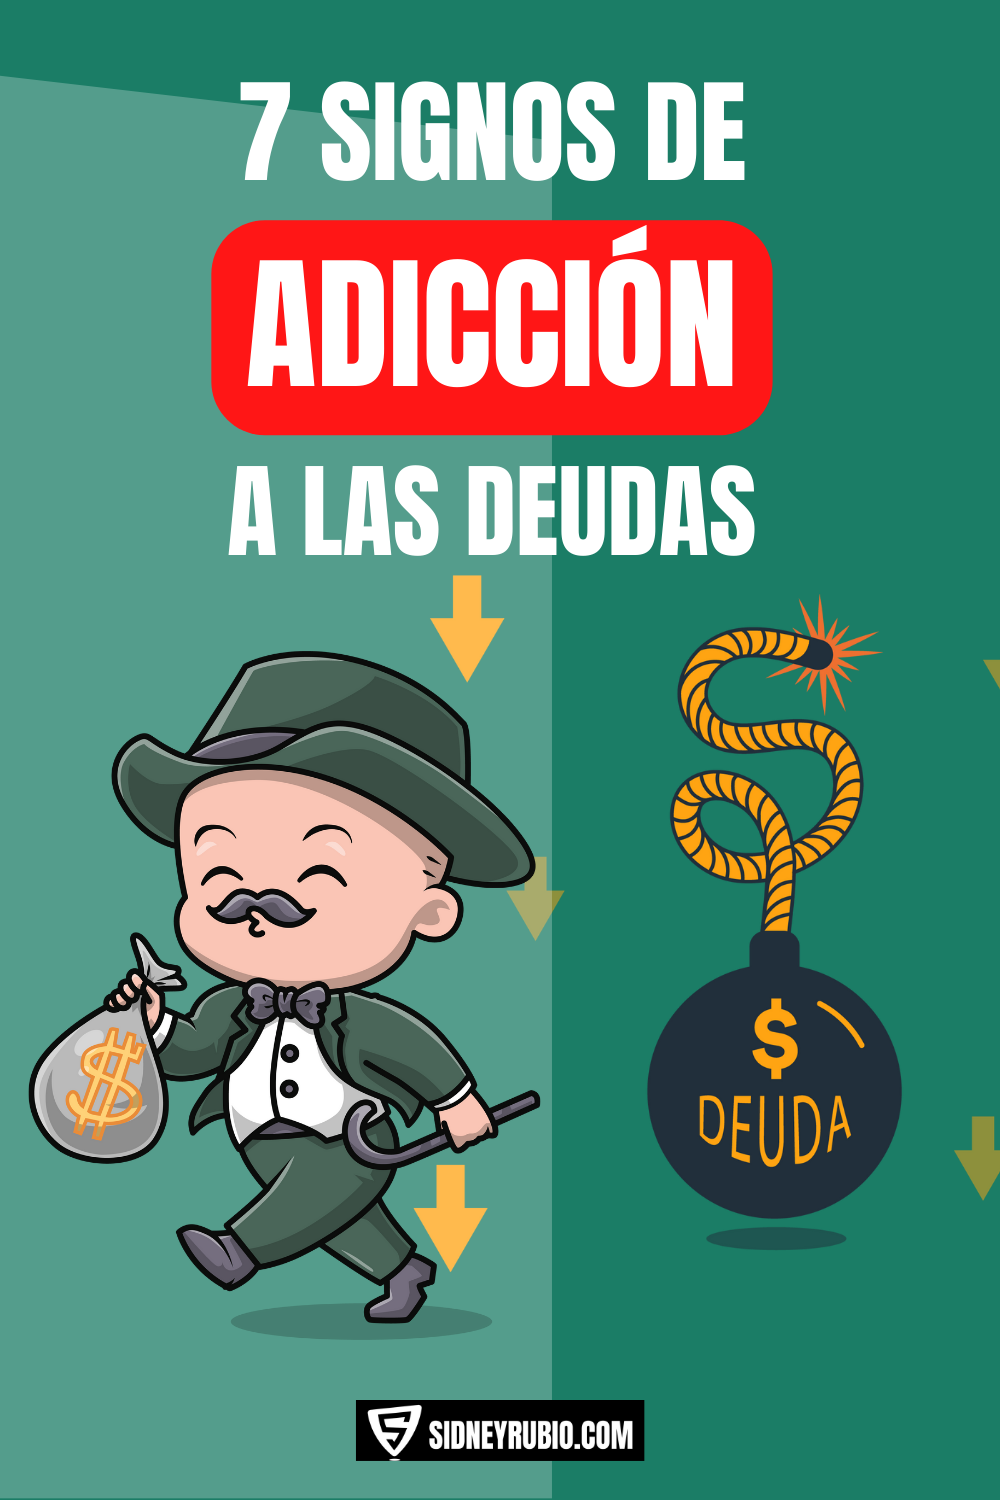 7 signos que indican que eres adicto a las deudas, de esta forma podrás averiguar si tienes adicción a las deudas